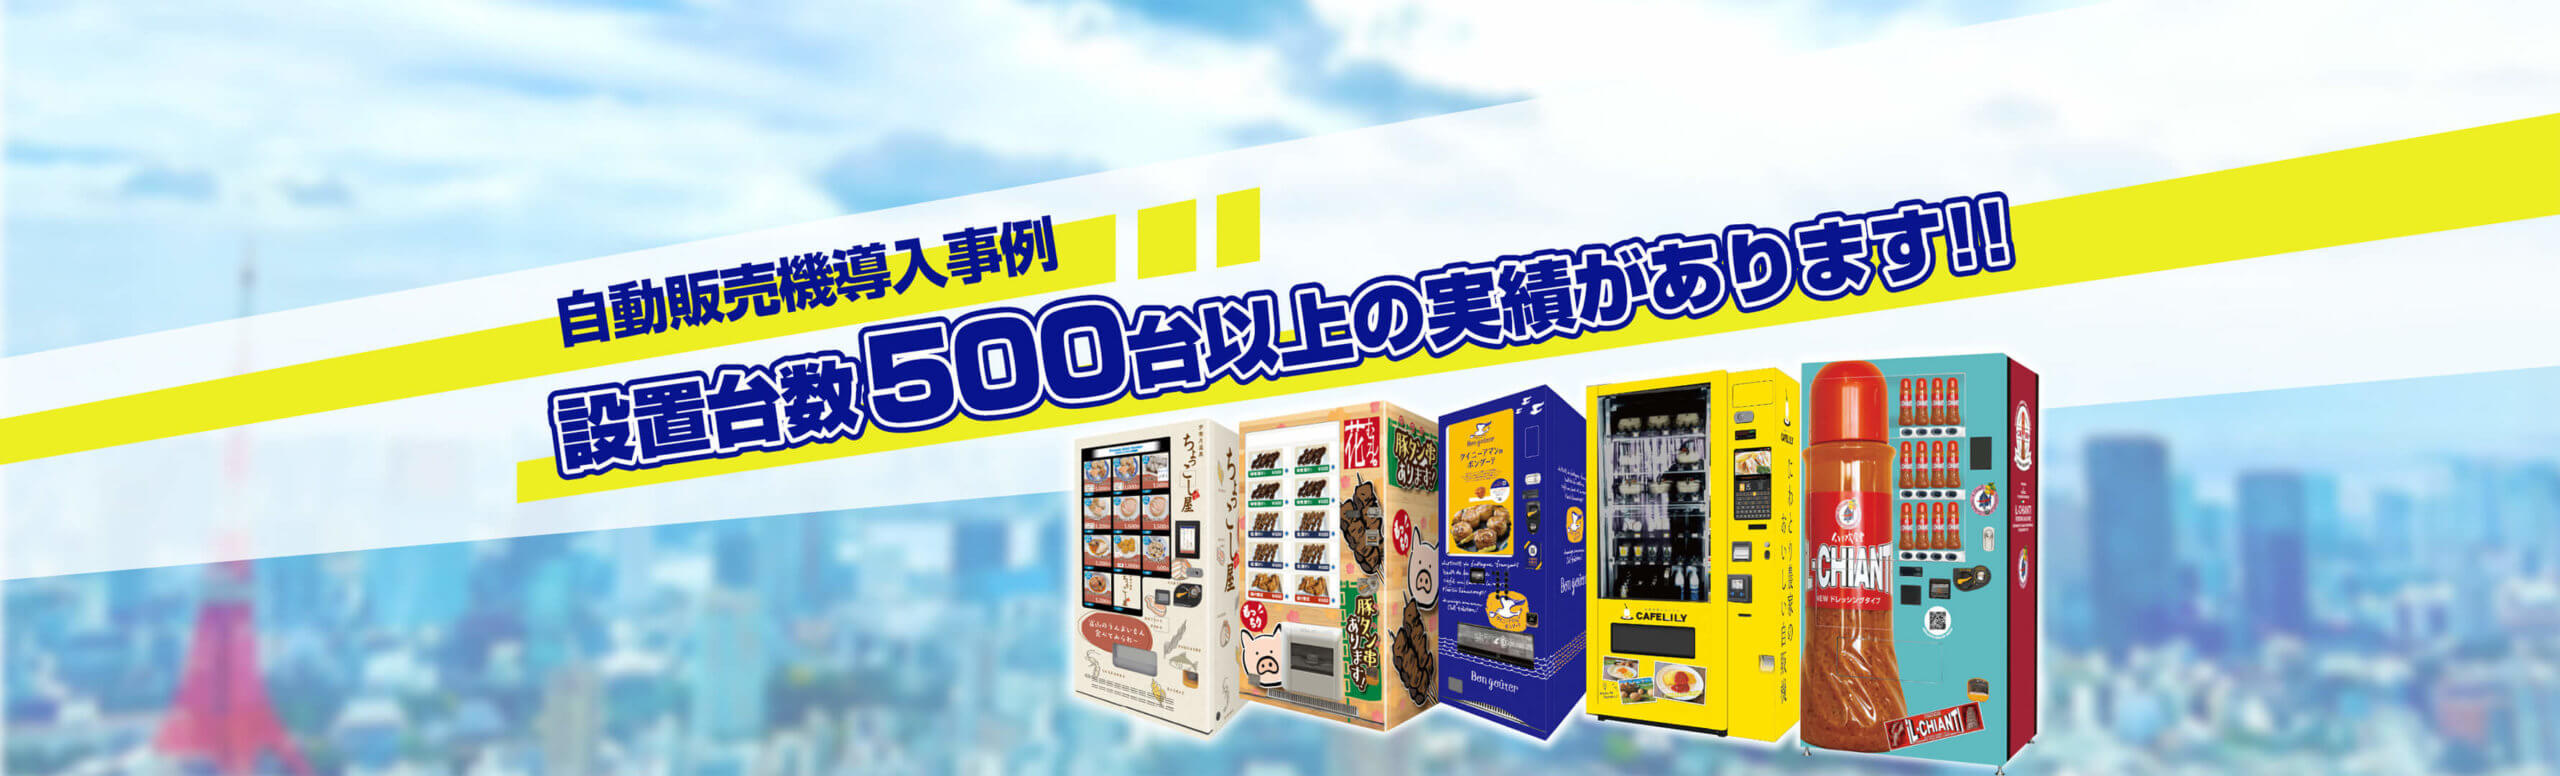 東京わたあめ本舗様にわたあめ自動販売機を導入しました